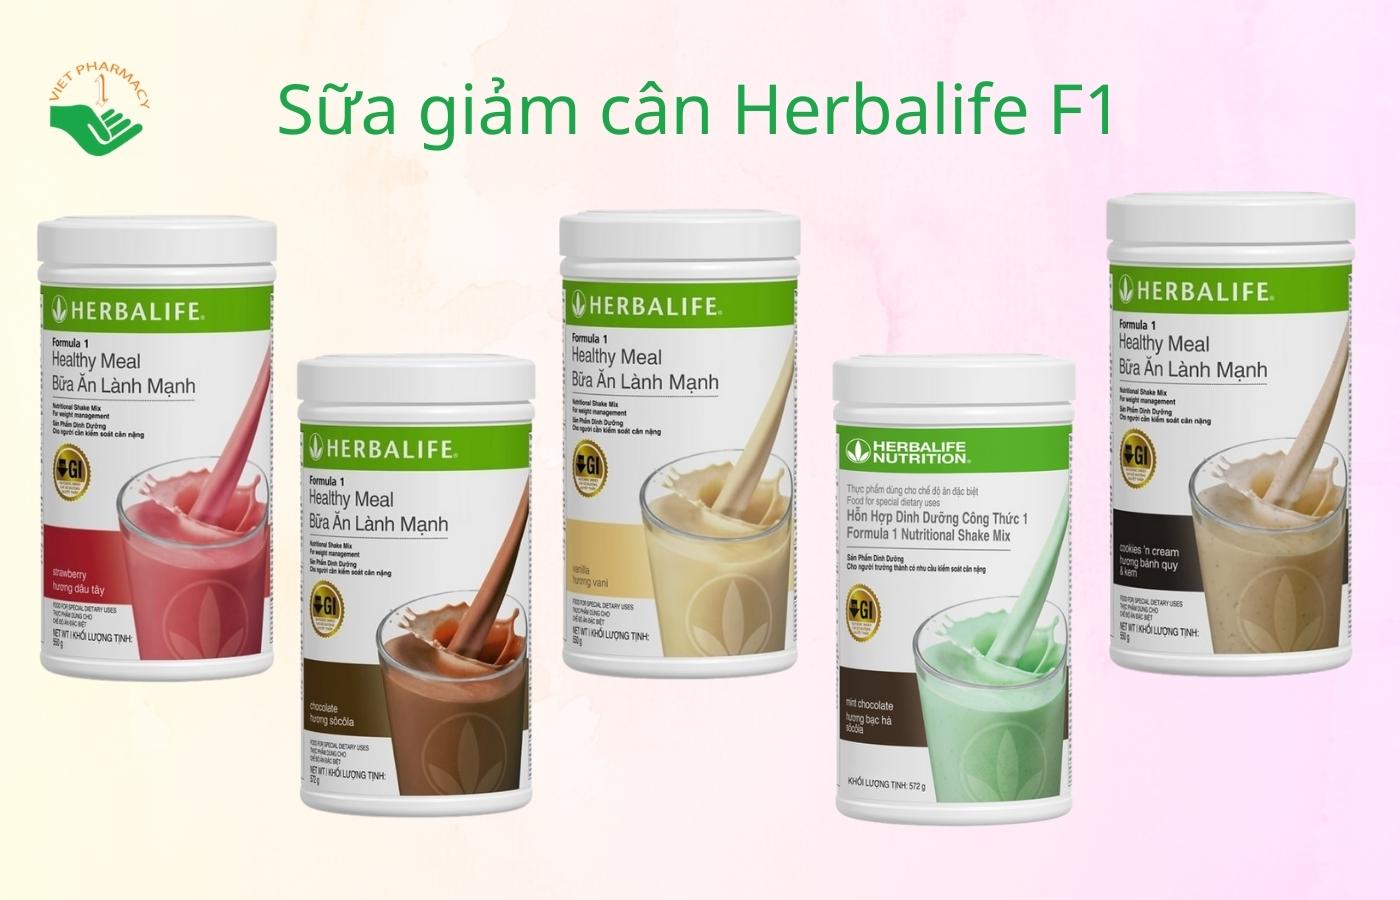 Herbalife - sữa giảm cân dinh dưỡng và hiệu quả